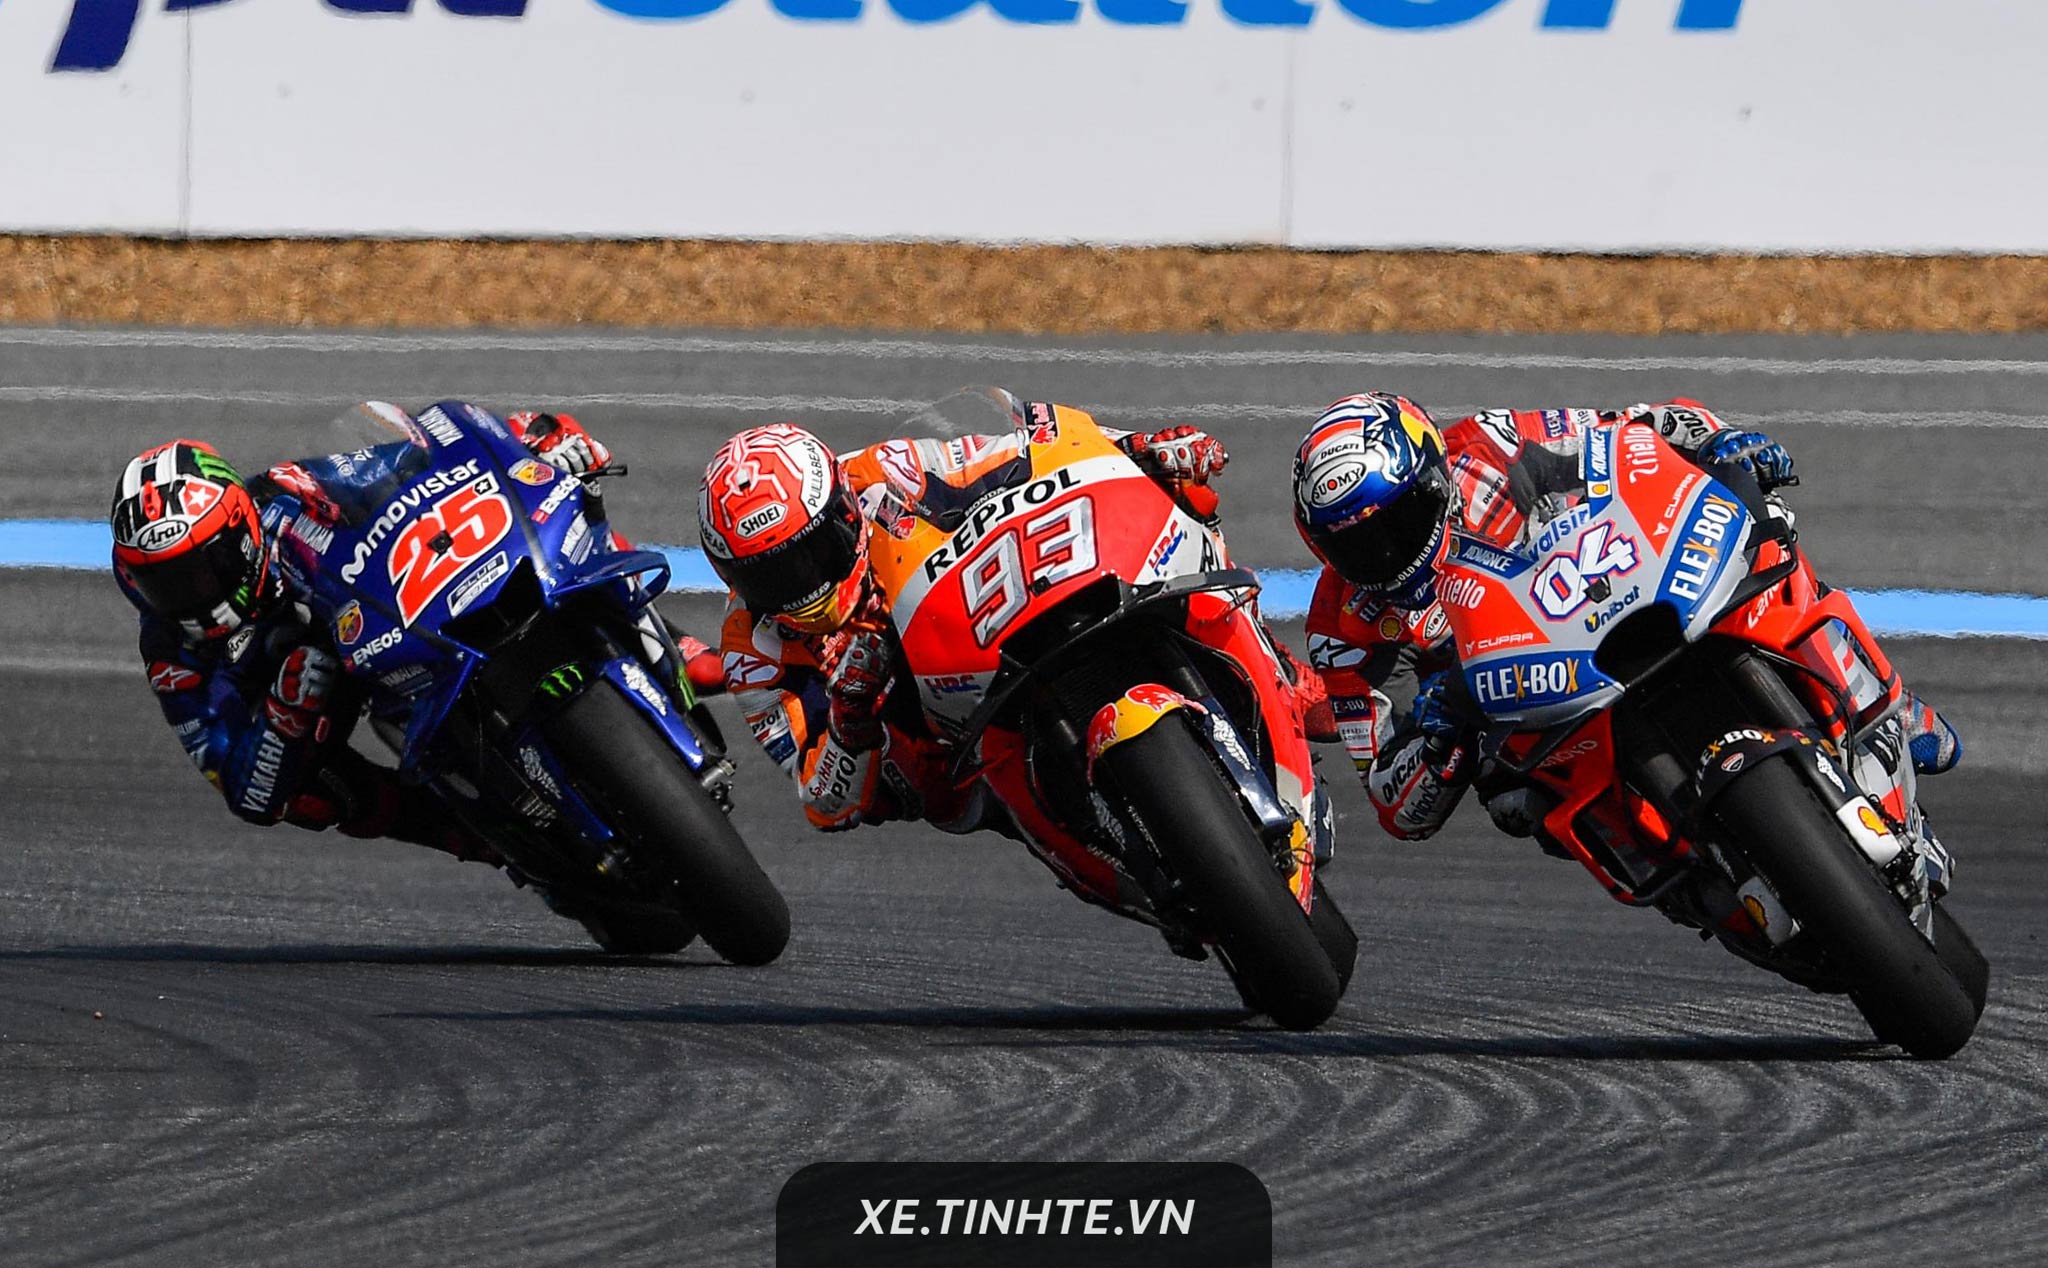 #MotoGP18: Marquez tiếp tục giữ ngôi đầu BXH, Rossi cải thiện thứ hạng tại ThaiGP